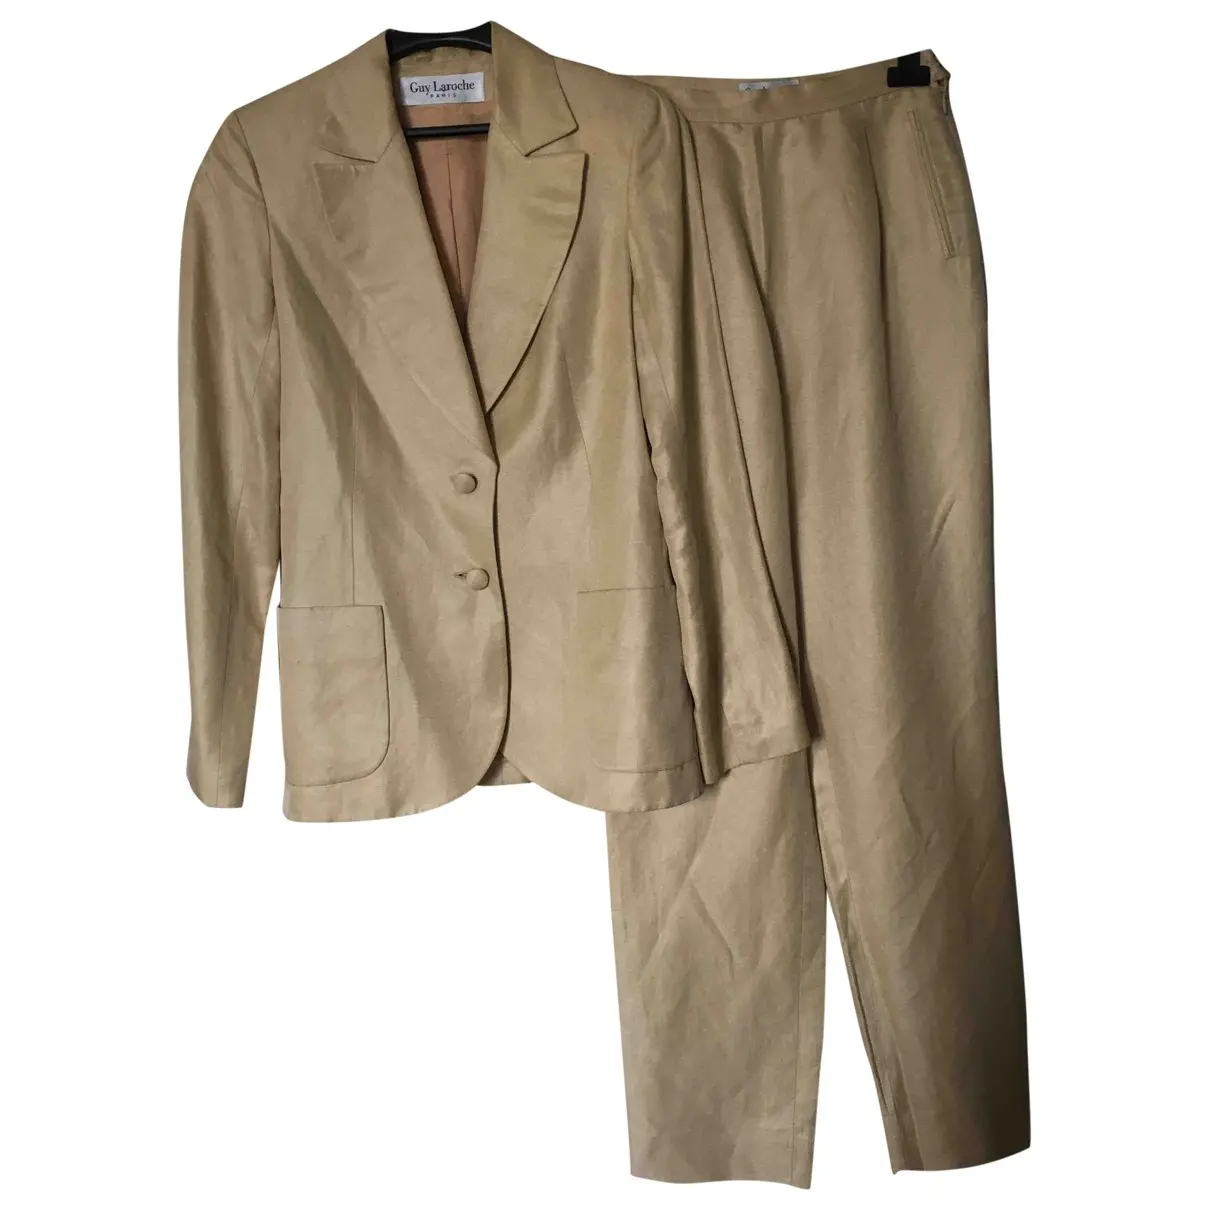 Silk suit jacket Guy Laroche